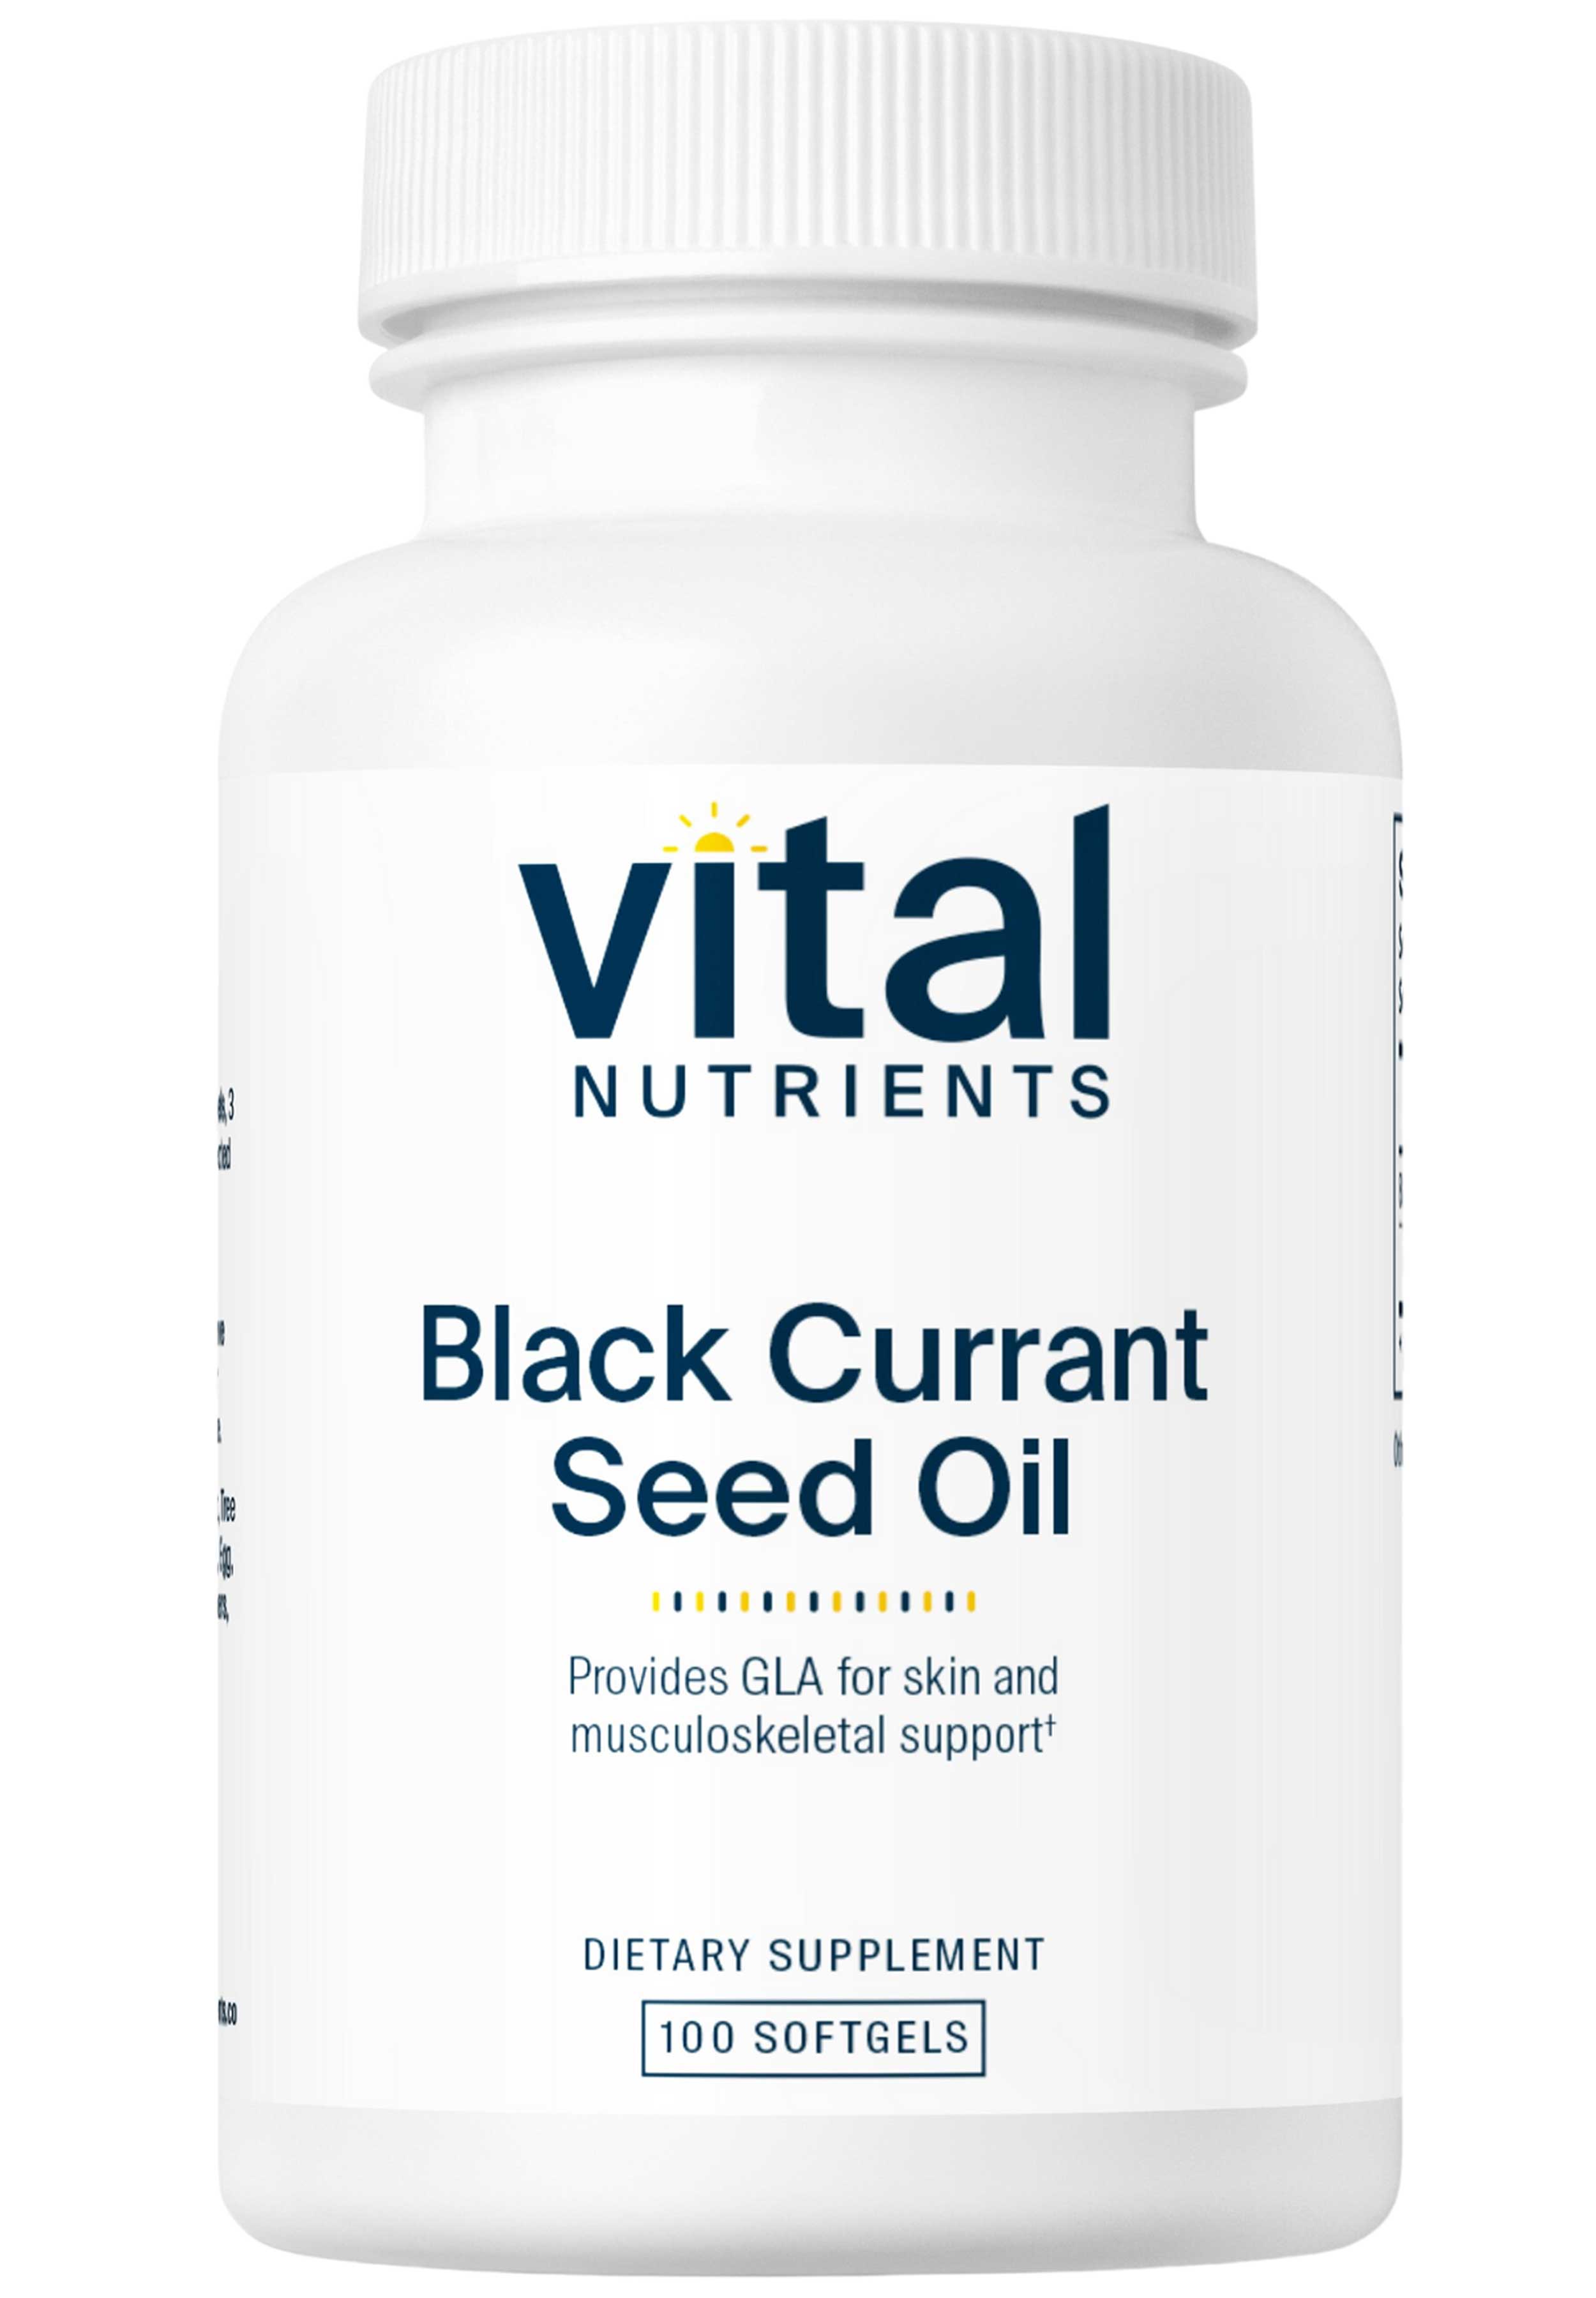 Vital Nutrients Black Currant Seed Oil